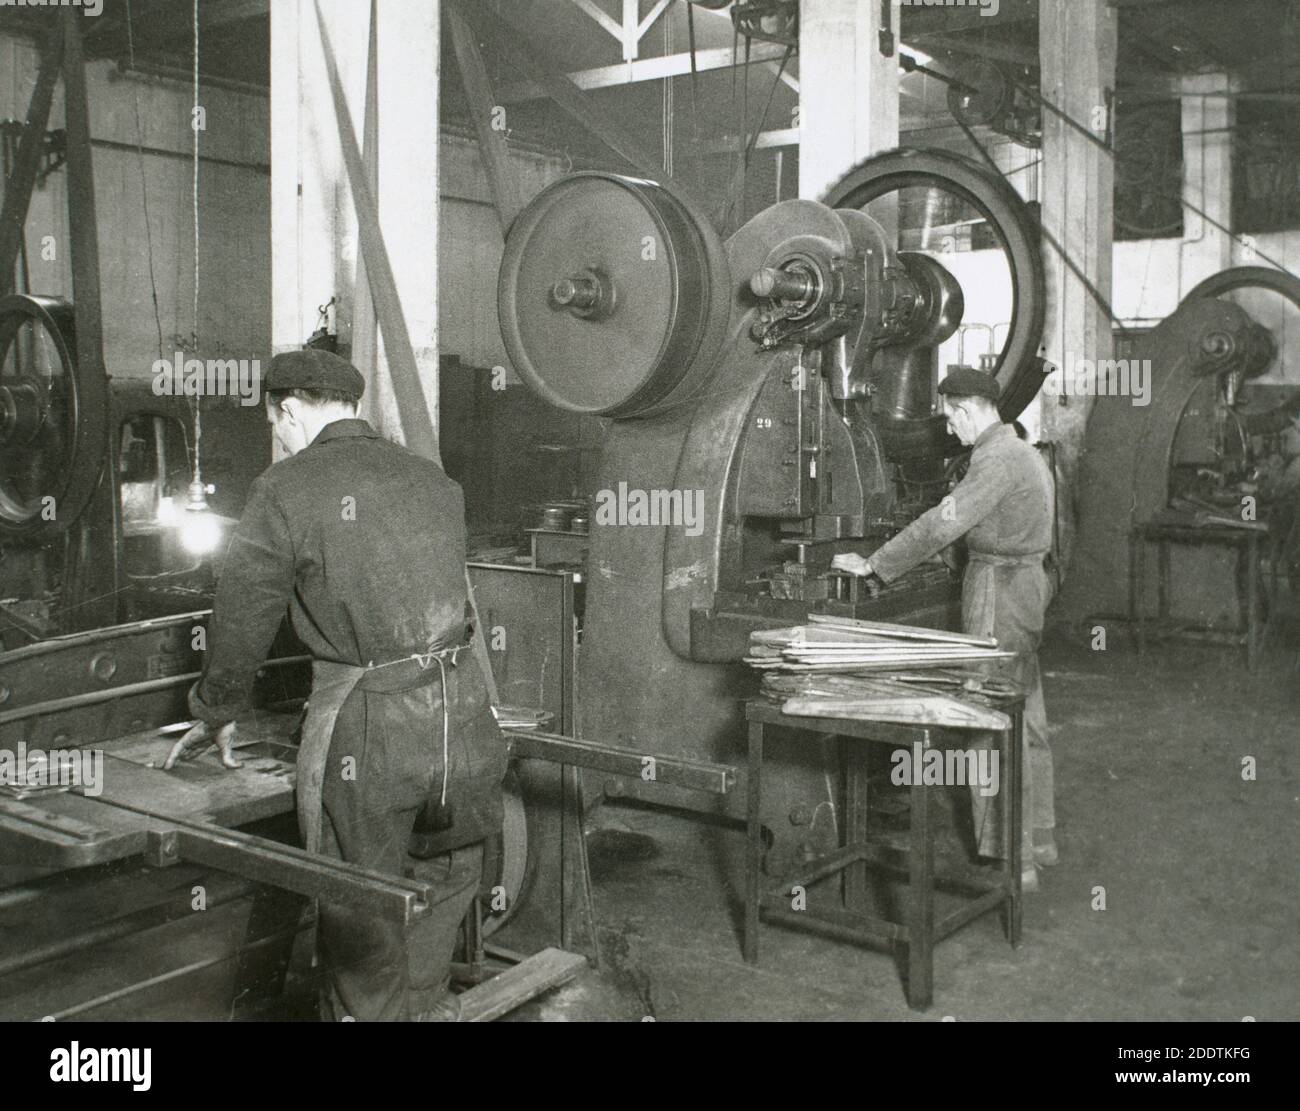 Industria spagnola, 1945. Linea di produzione di un'azienda dedicata alla produzione di componenti per motocicli. Stampaggio del metallo, sezione presse. Spagna, Catalogna, Barcellona. Foto Stock